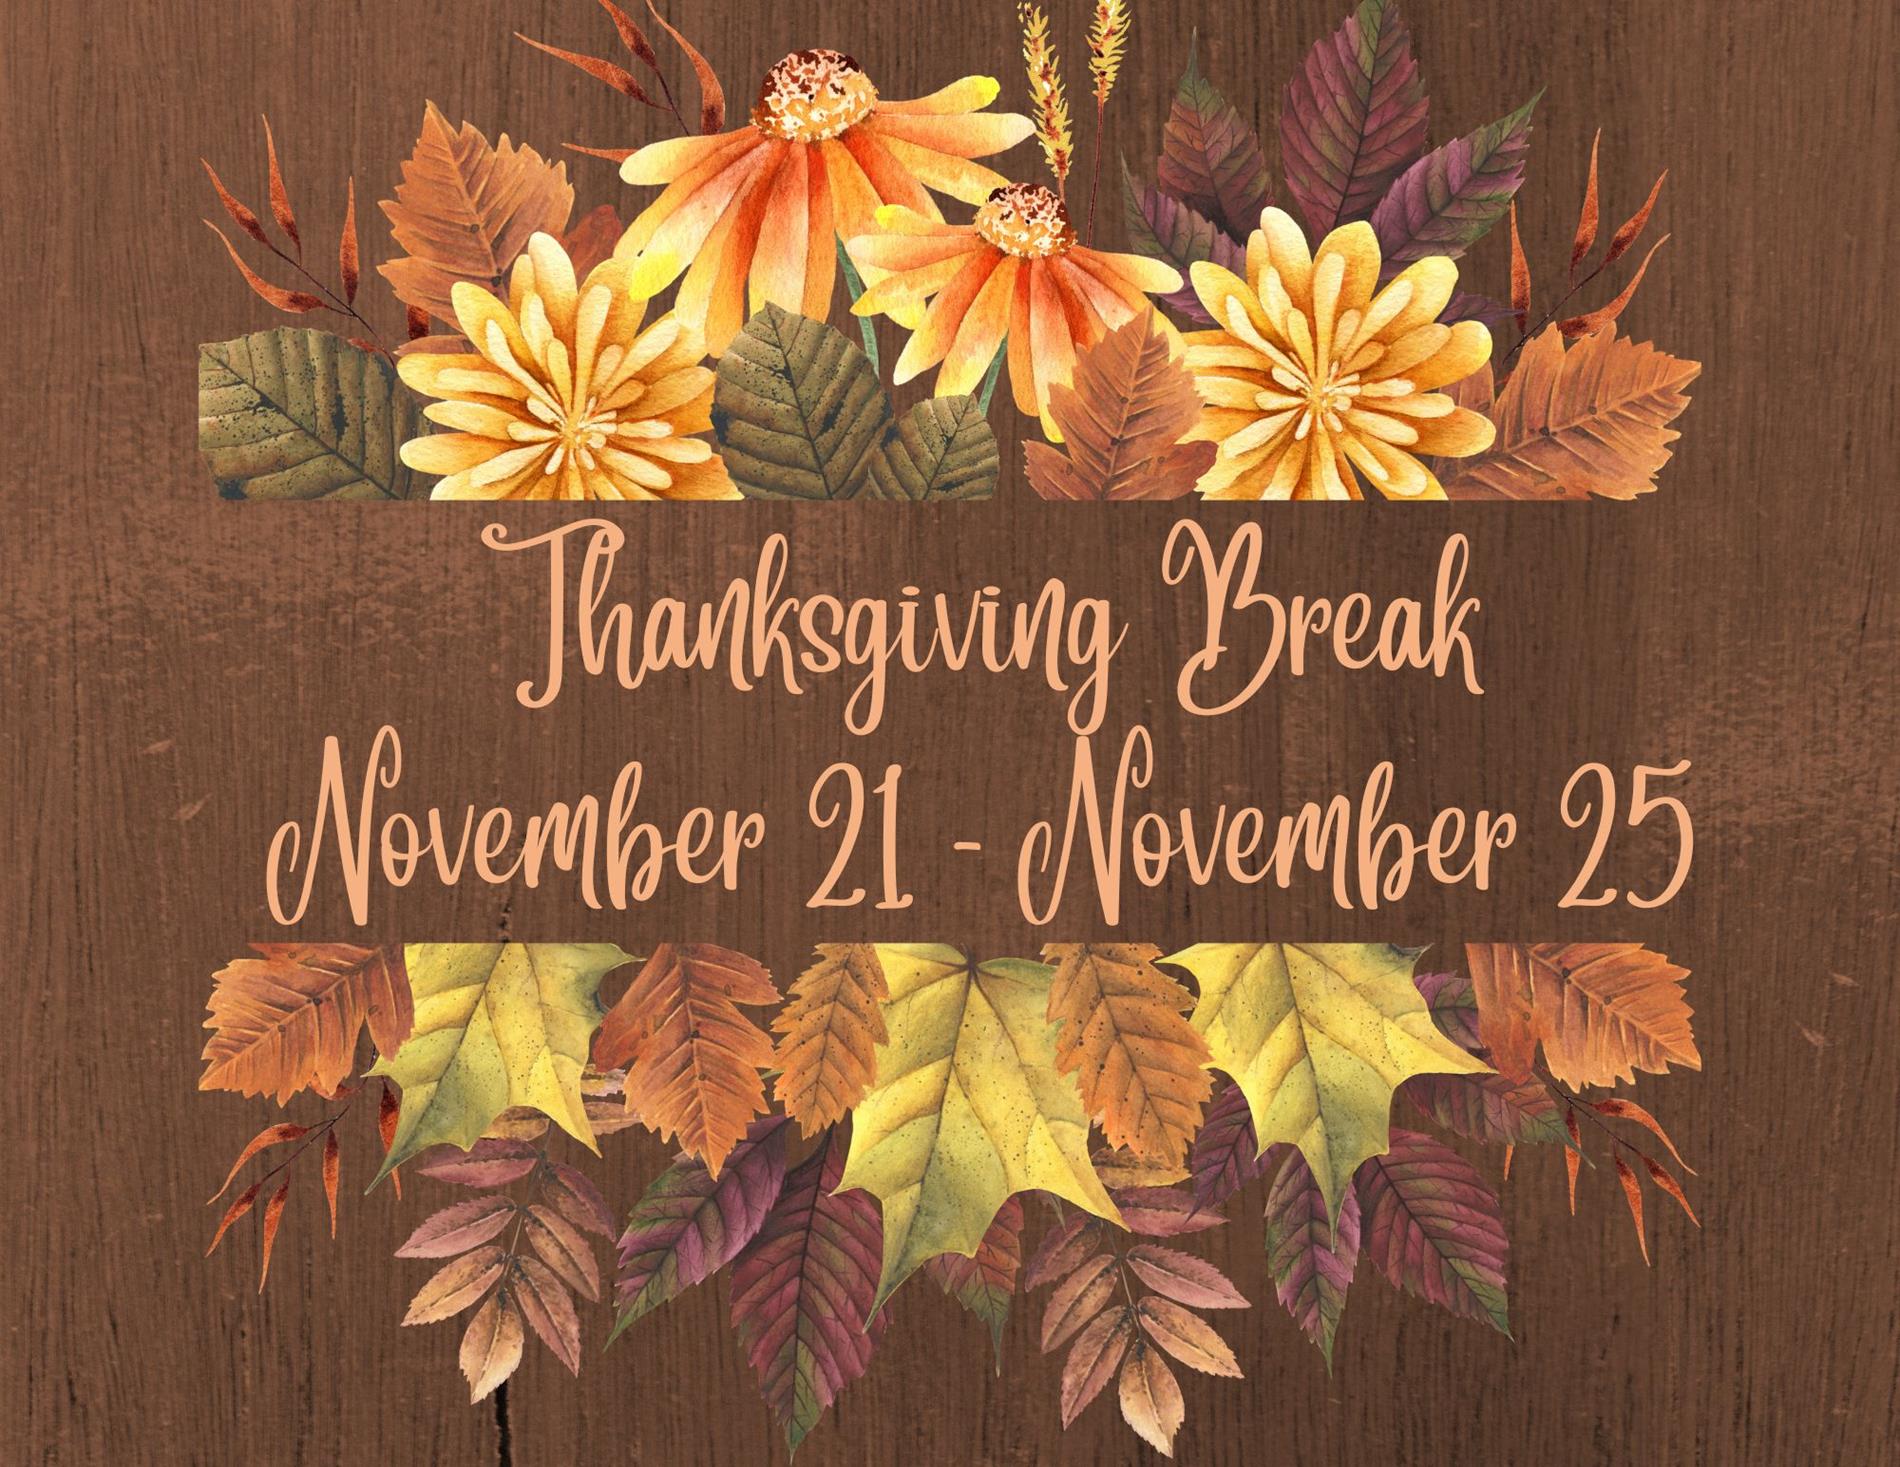 Thanksgiving Break November 21-November 25